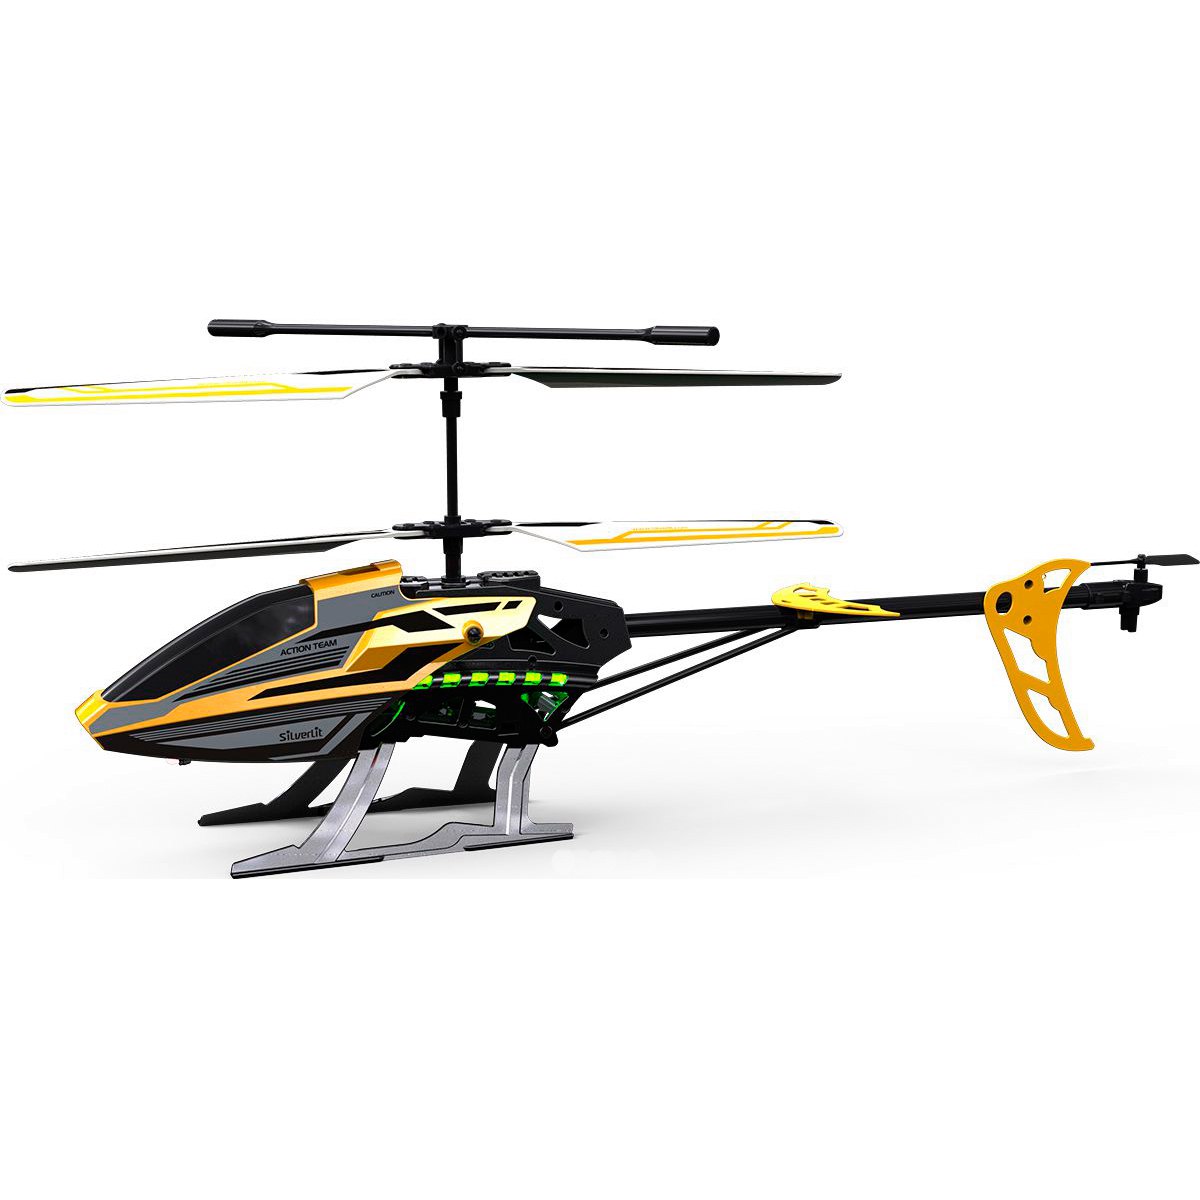 (УЦЕНКА) Вертолет р/у Sky Eagle III (на аккум., свет), желтый, 49 см